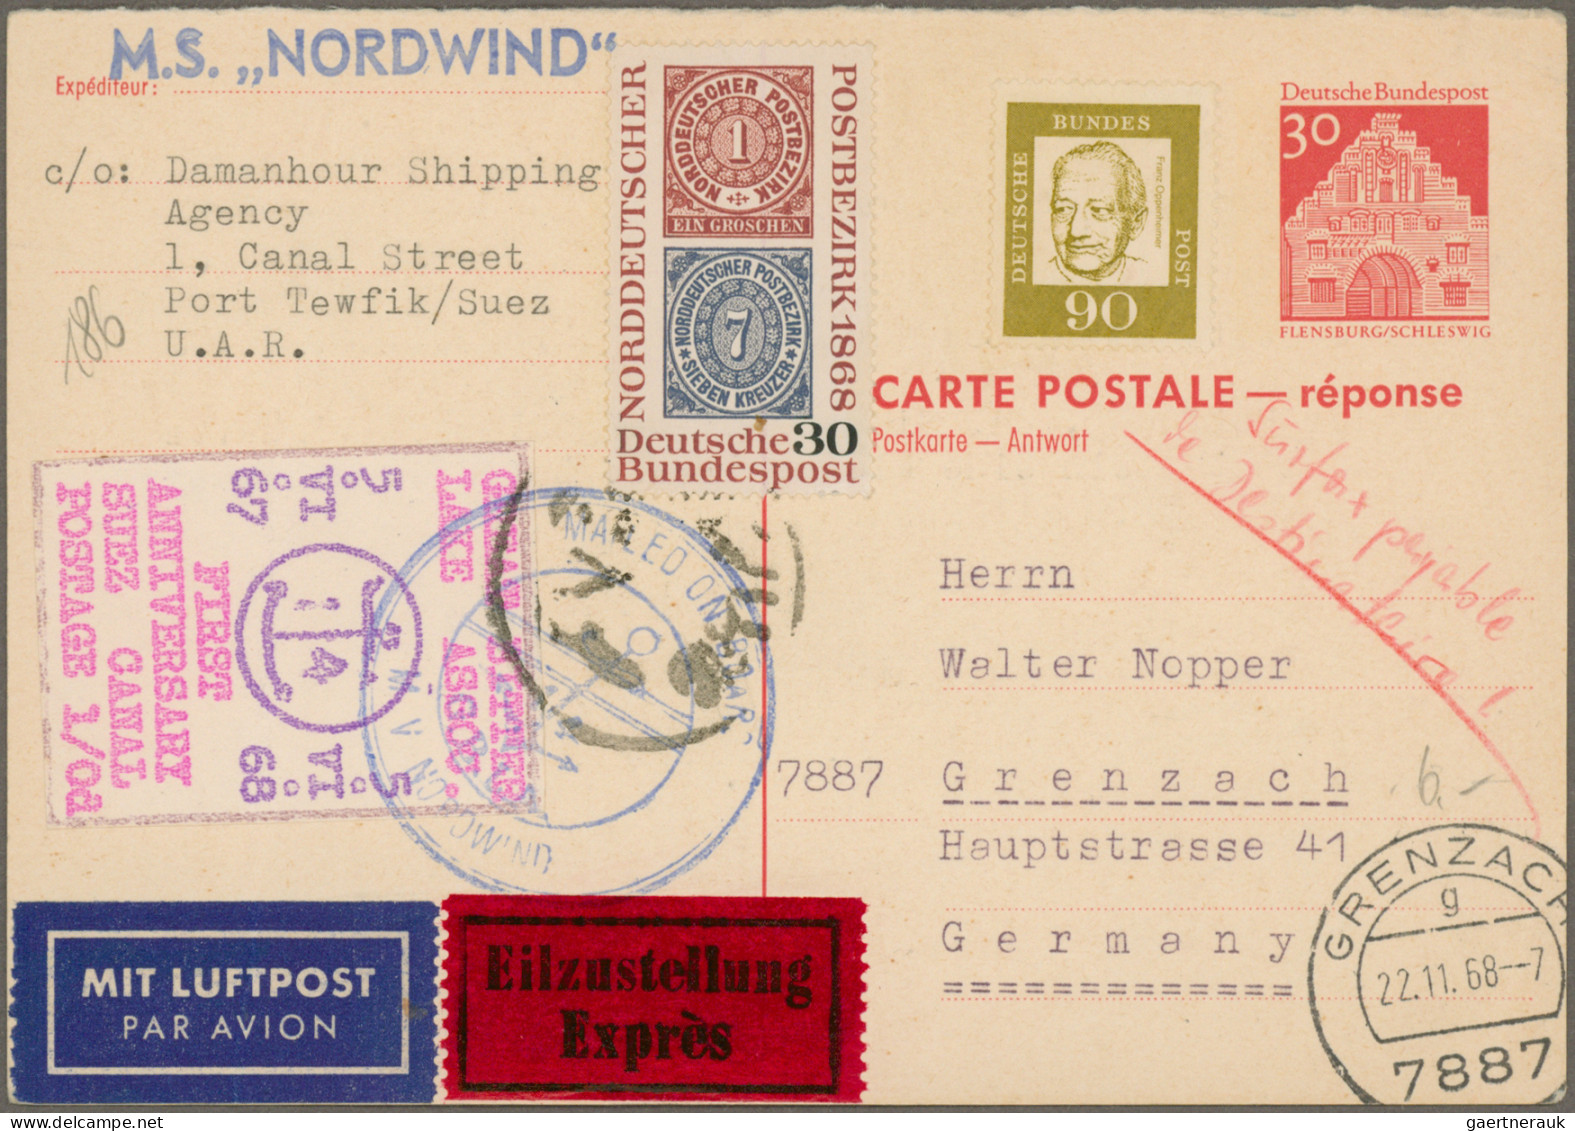 Deutschland nach 1945: 1945/2000, vielseitige Partie von ca. 115 Briefen und Kar